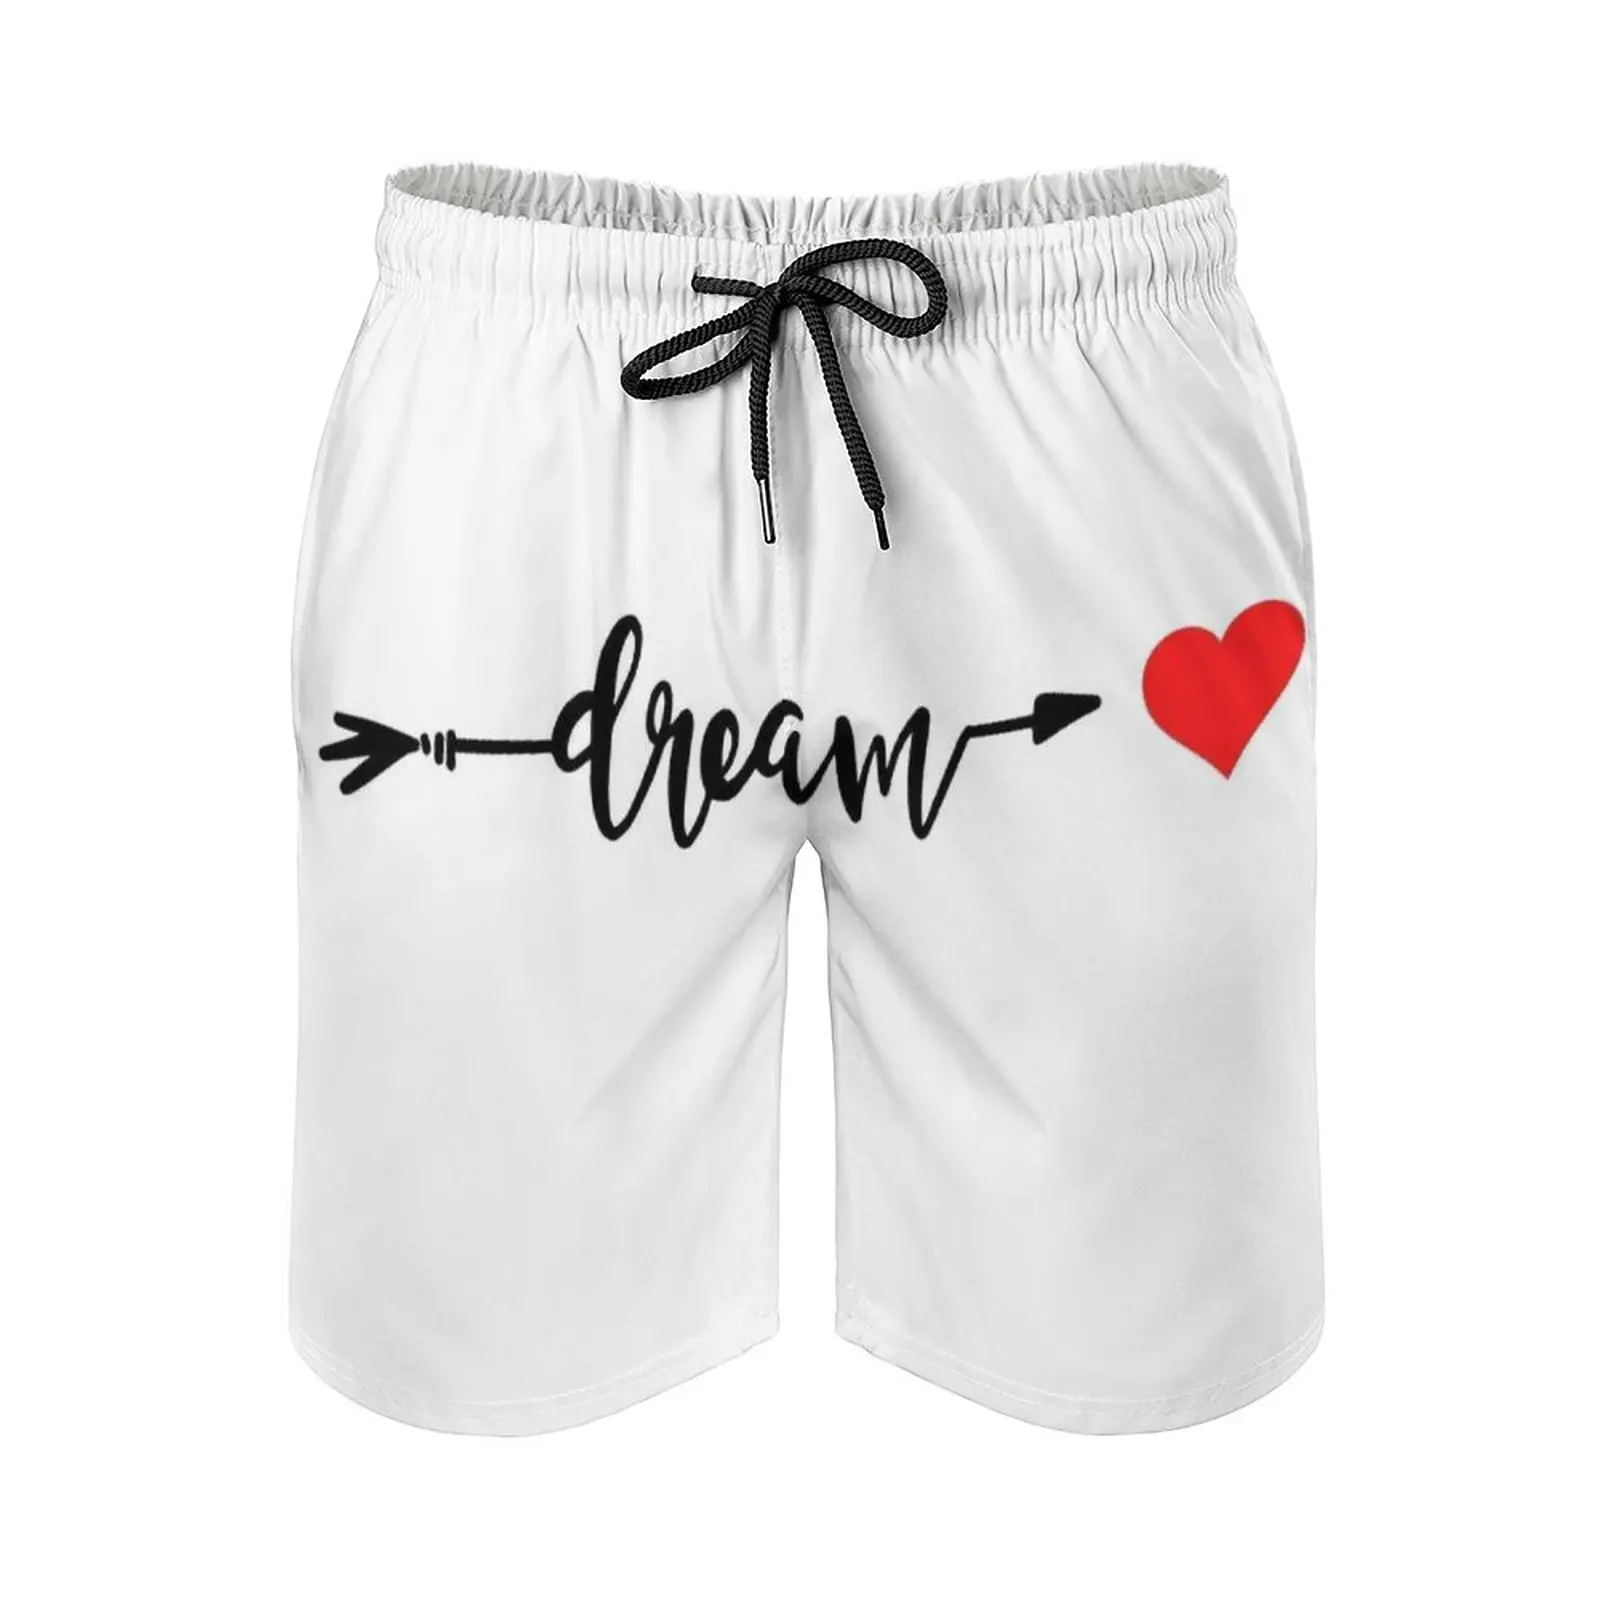 

Dream Men'S Beach Shorts With Mesh Lining Surfing Pants Swim Trunks Dream Heart Black White Red Tops Jugs Trending Design On